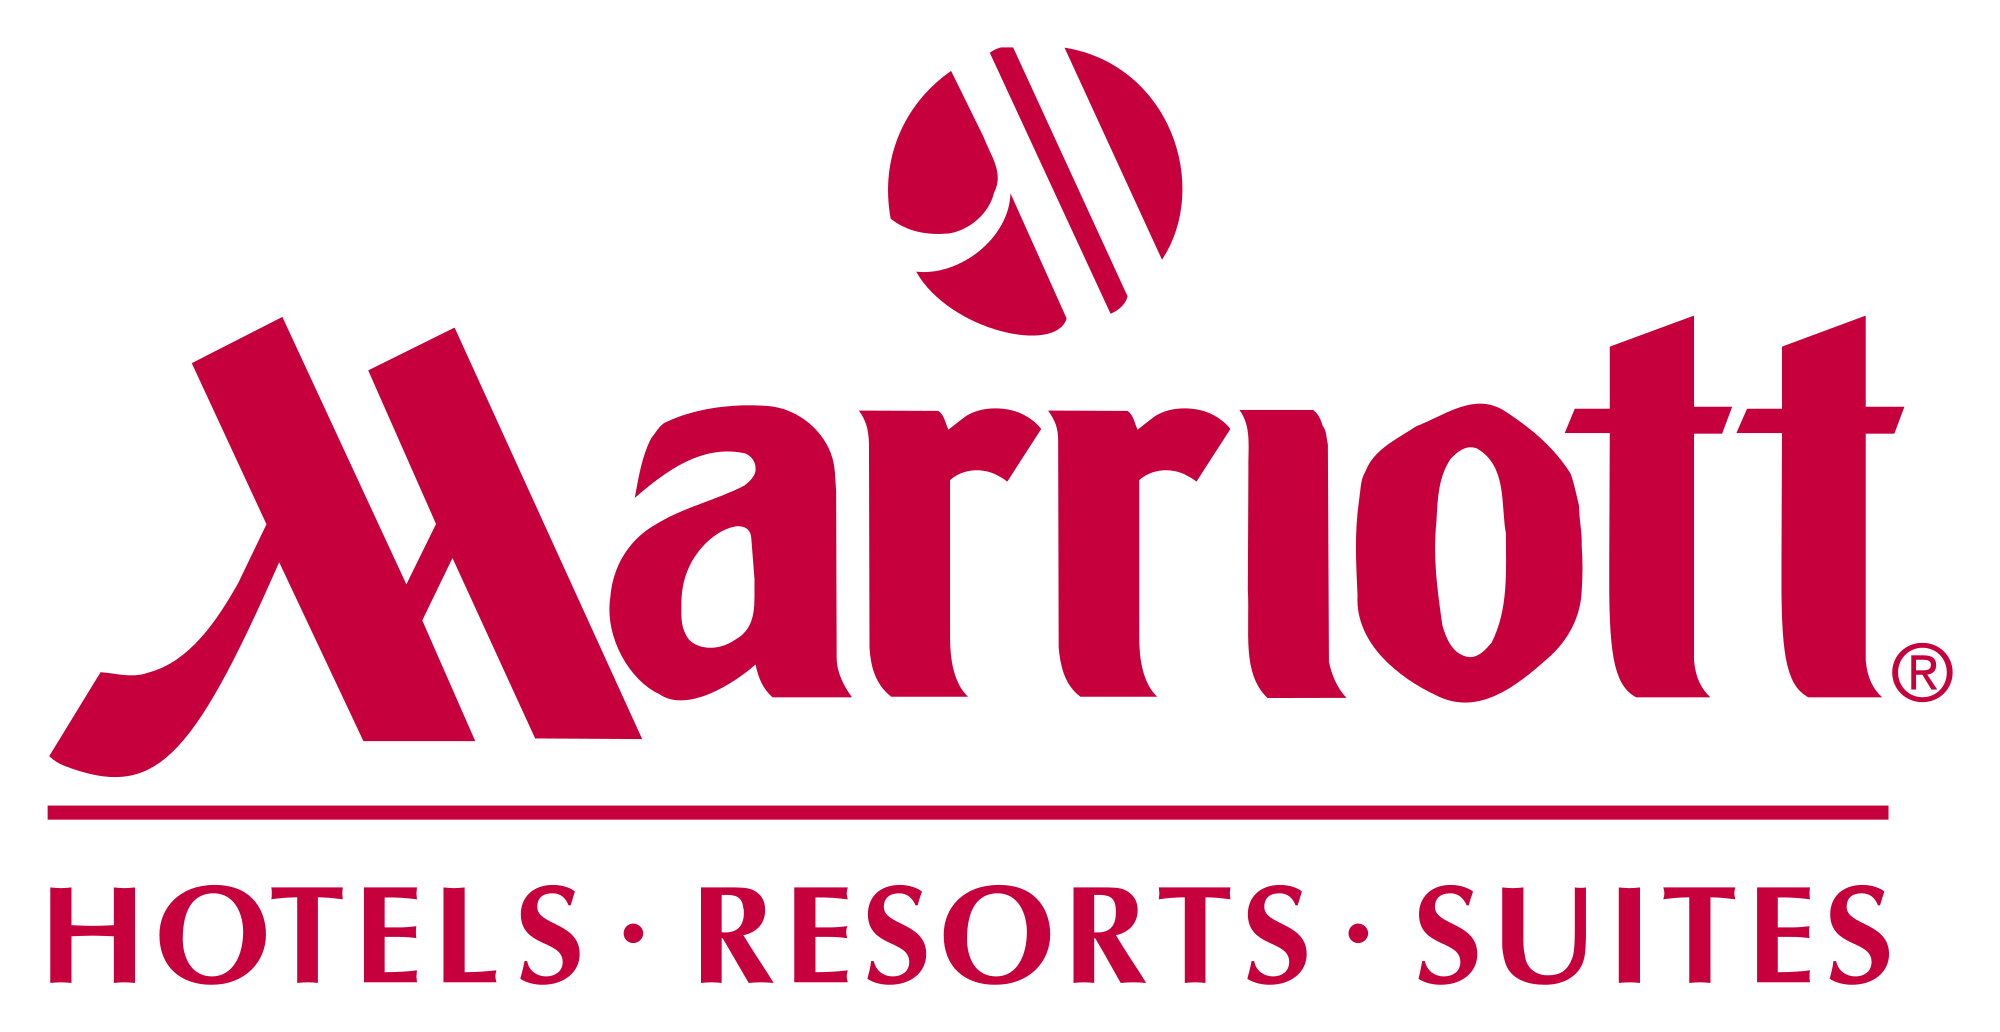 Marriott Corporation.png